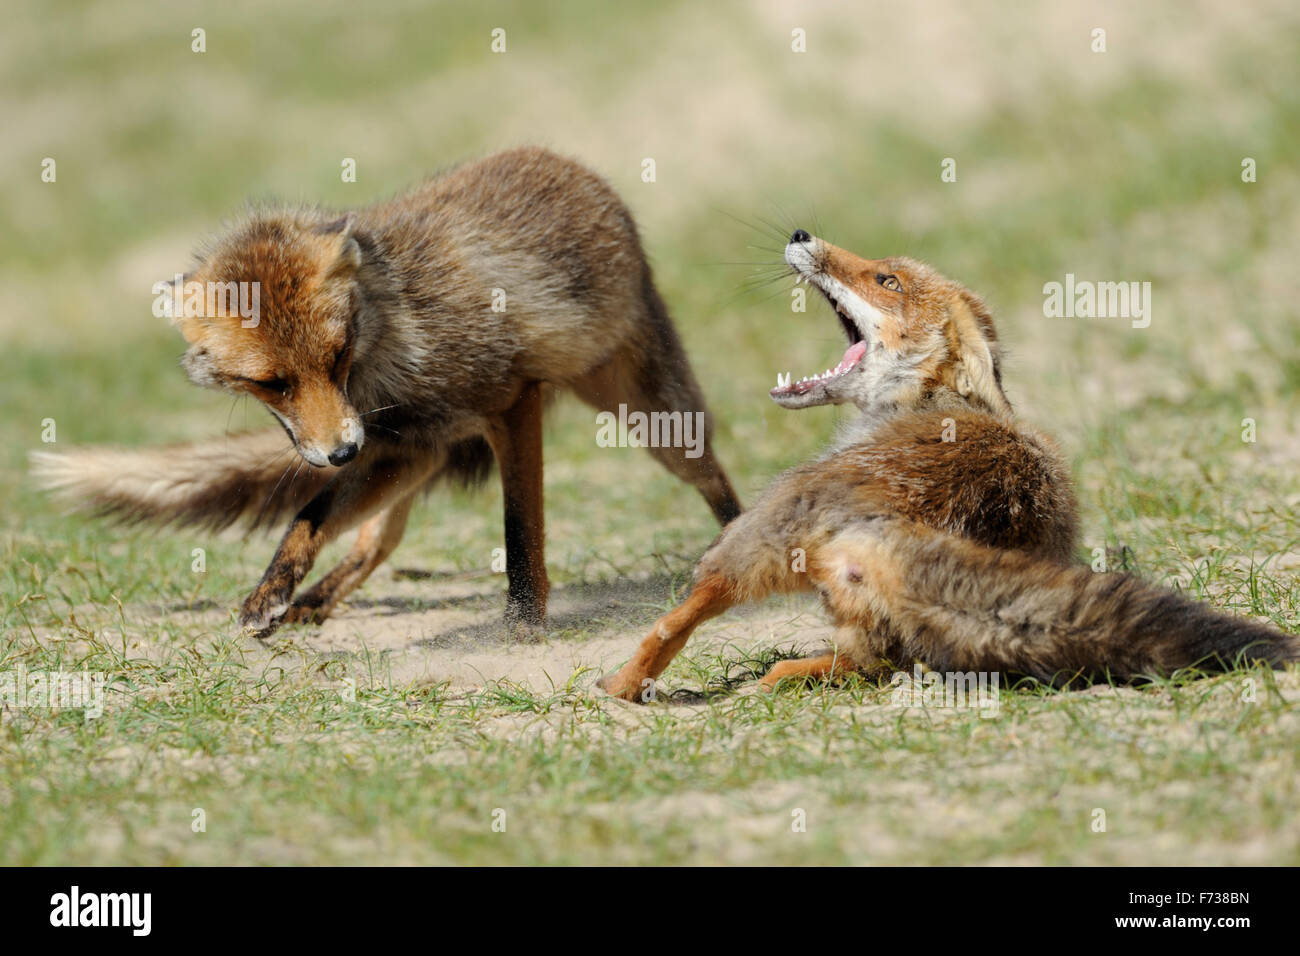 / Rotfuechse zorros (Vulpes vulpes ), rivales en una feroz lucha, lucha, persiguiendo el uno al otro. Foto de stock